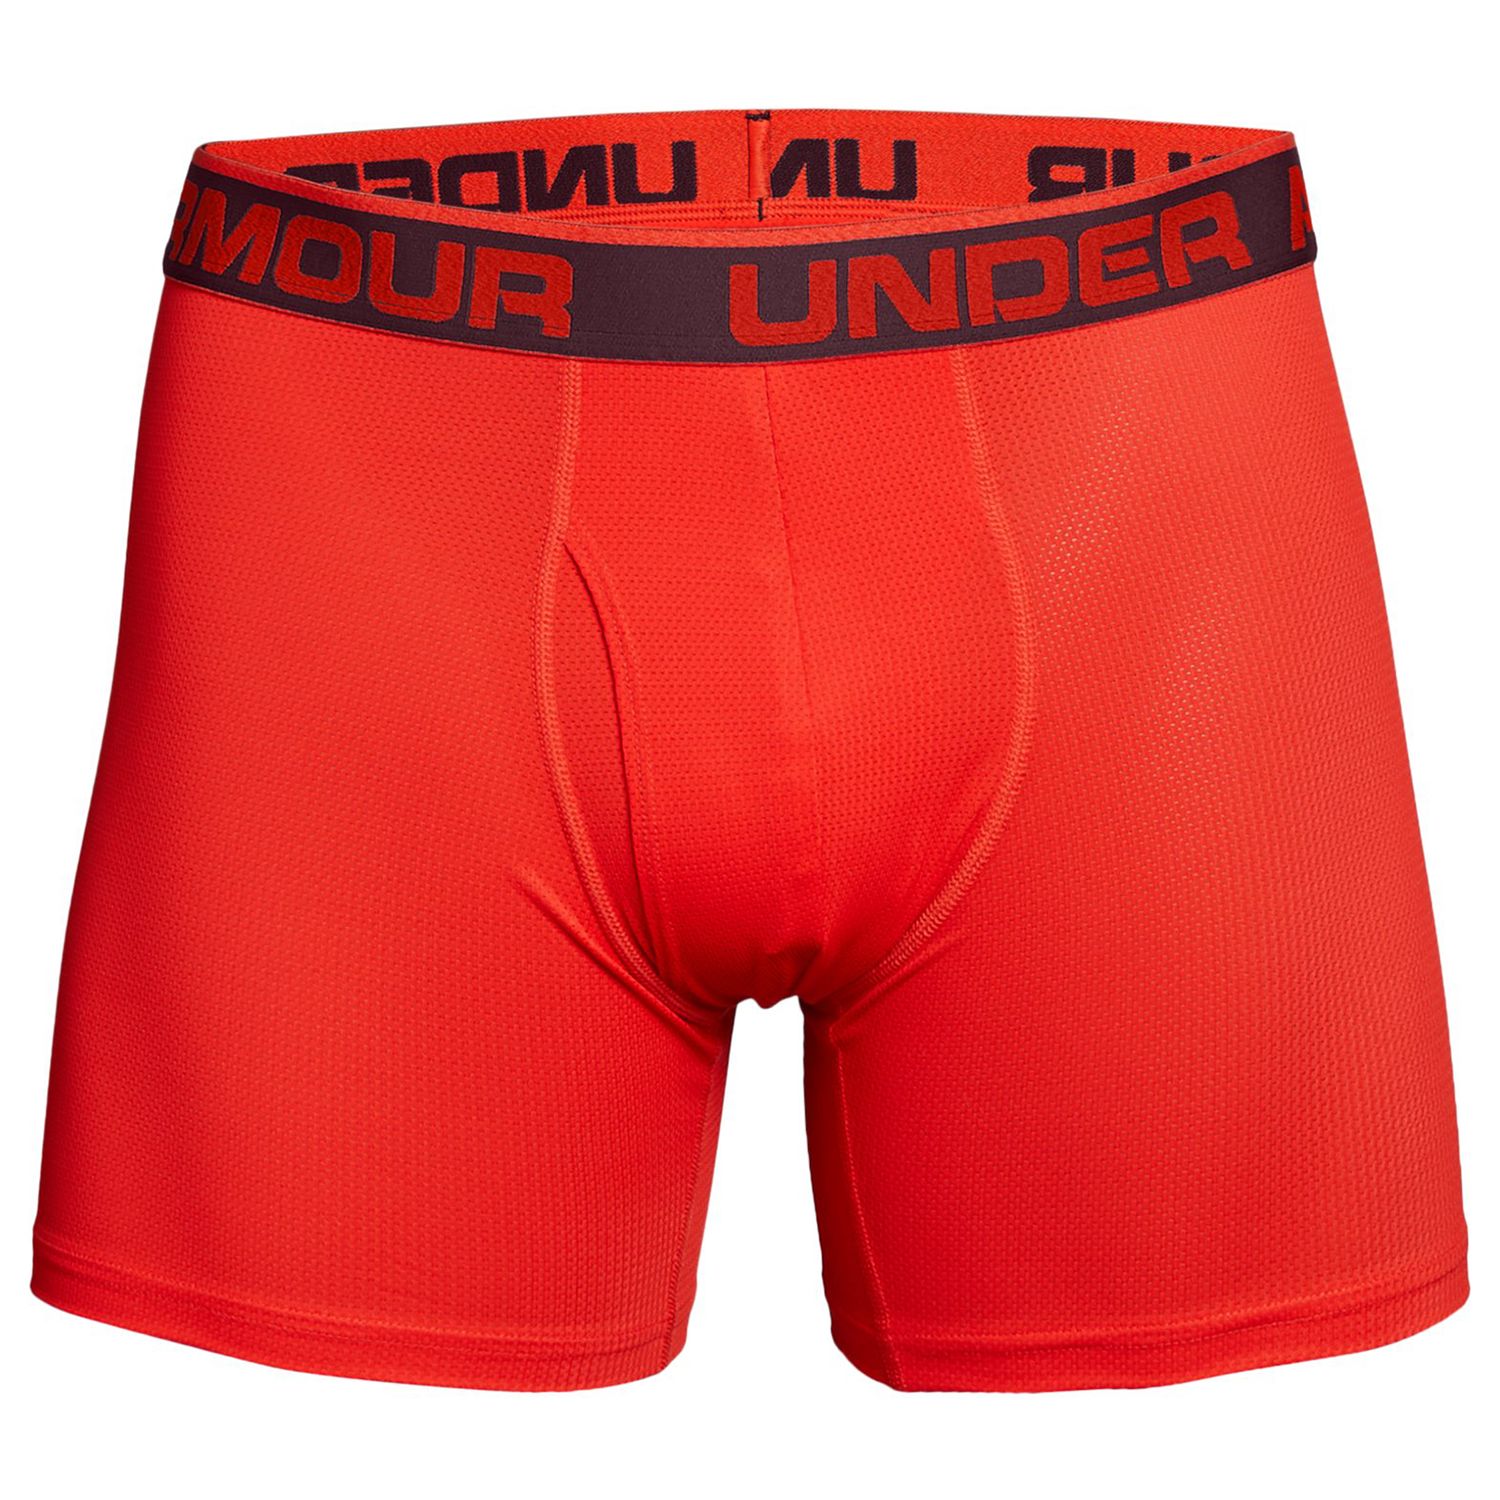 kohl's under armour underwear